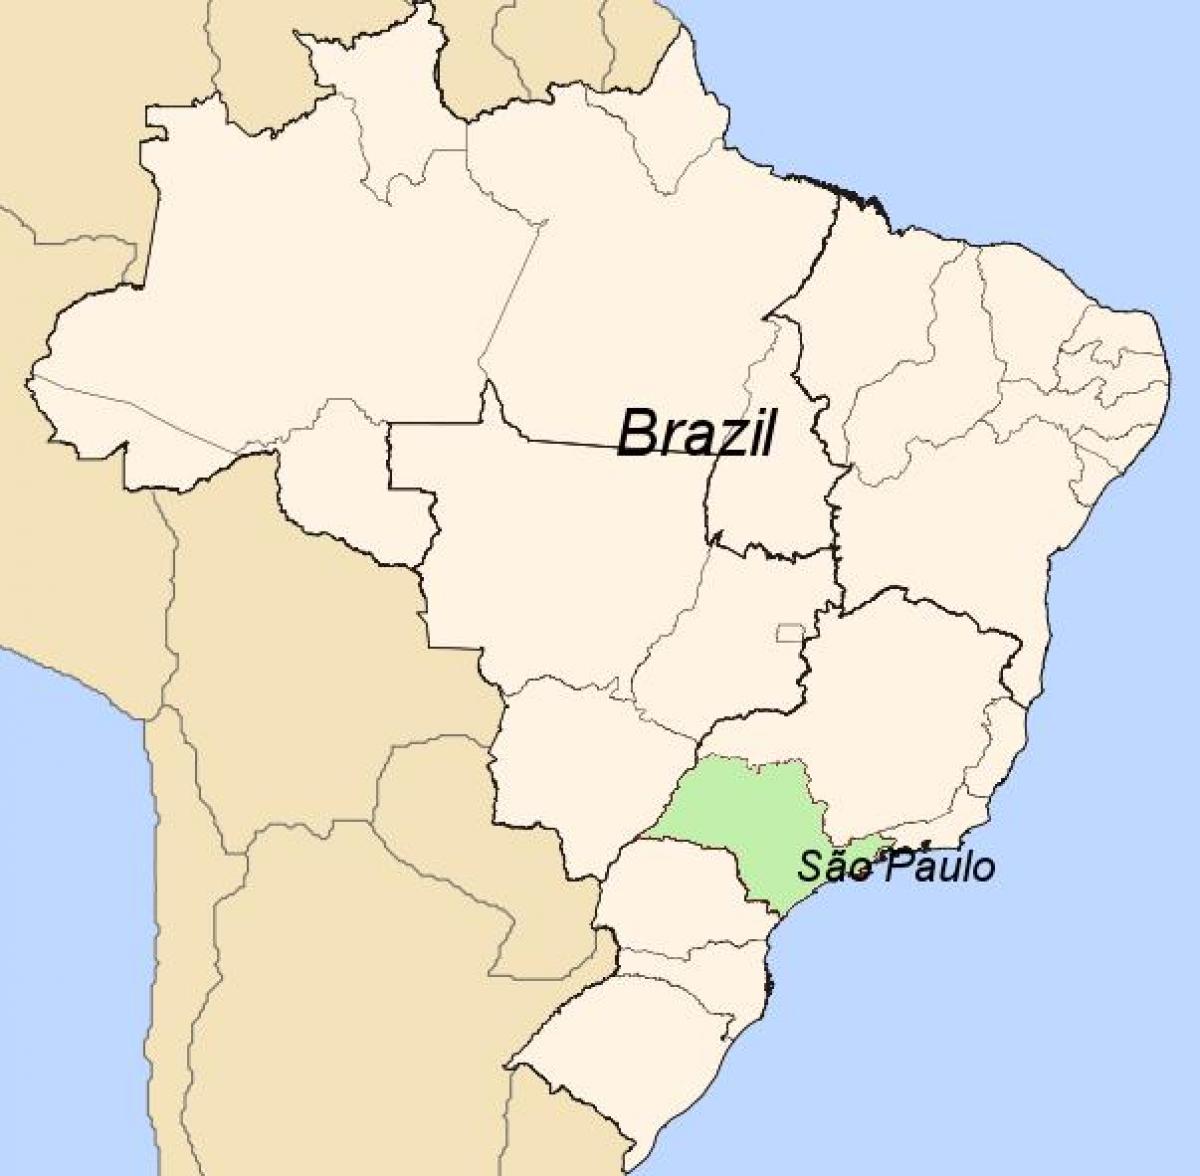 Mapa do Brasil: estados, capitais e regiões - Brasil Escola